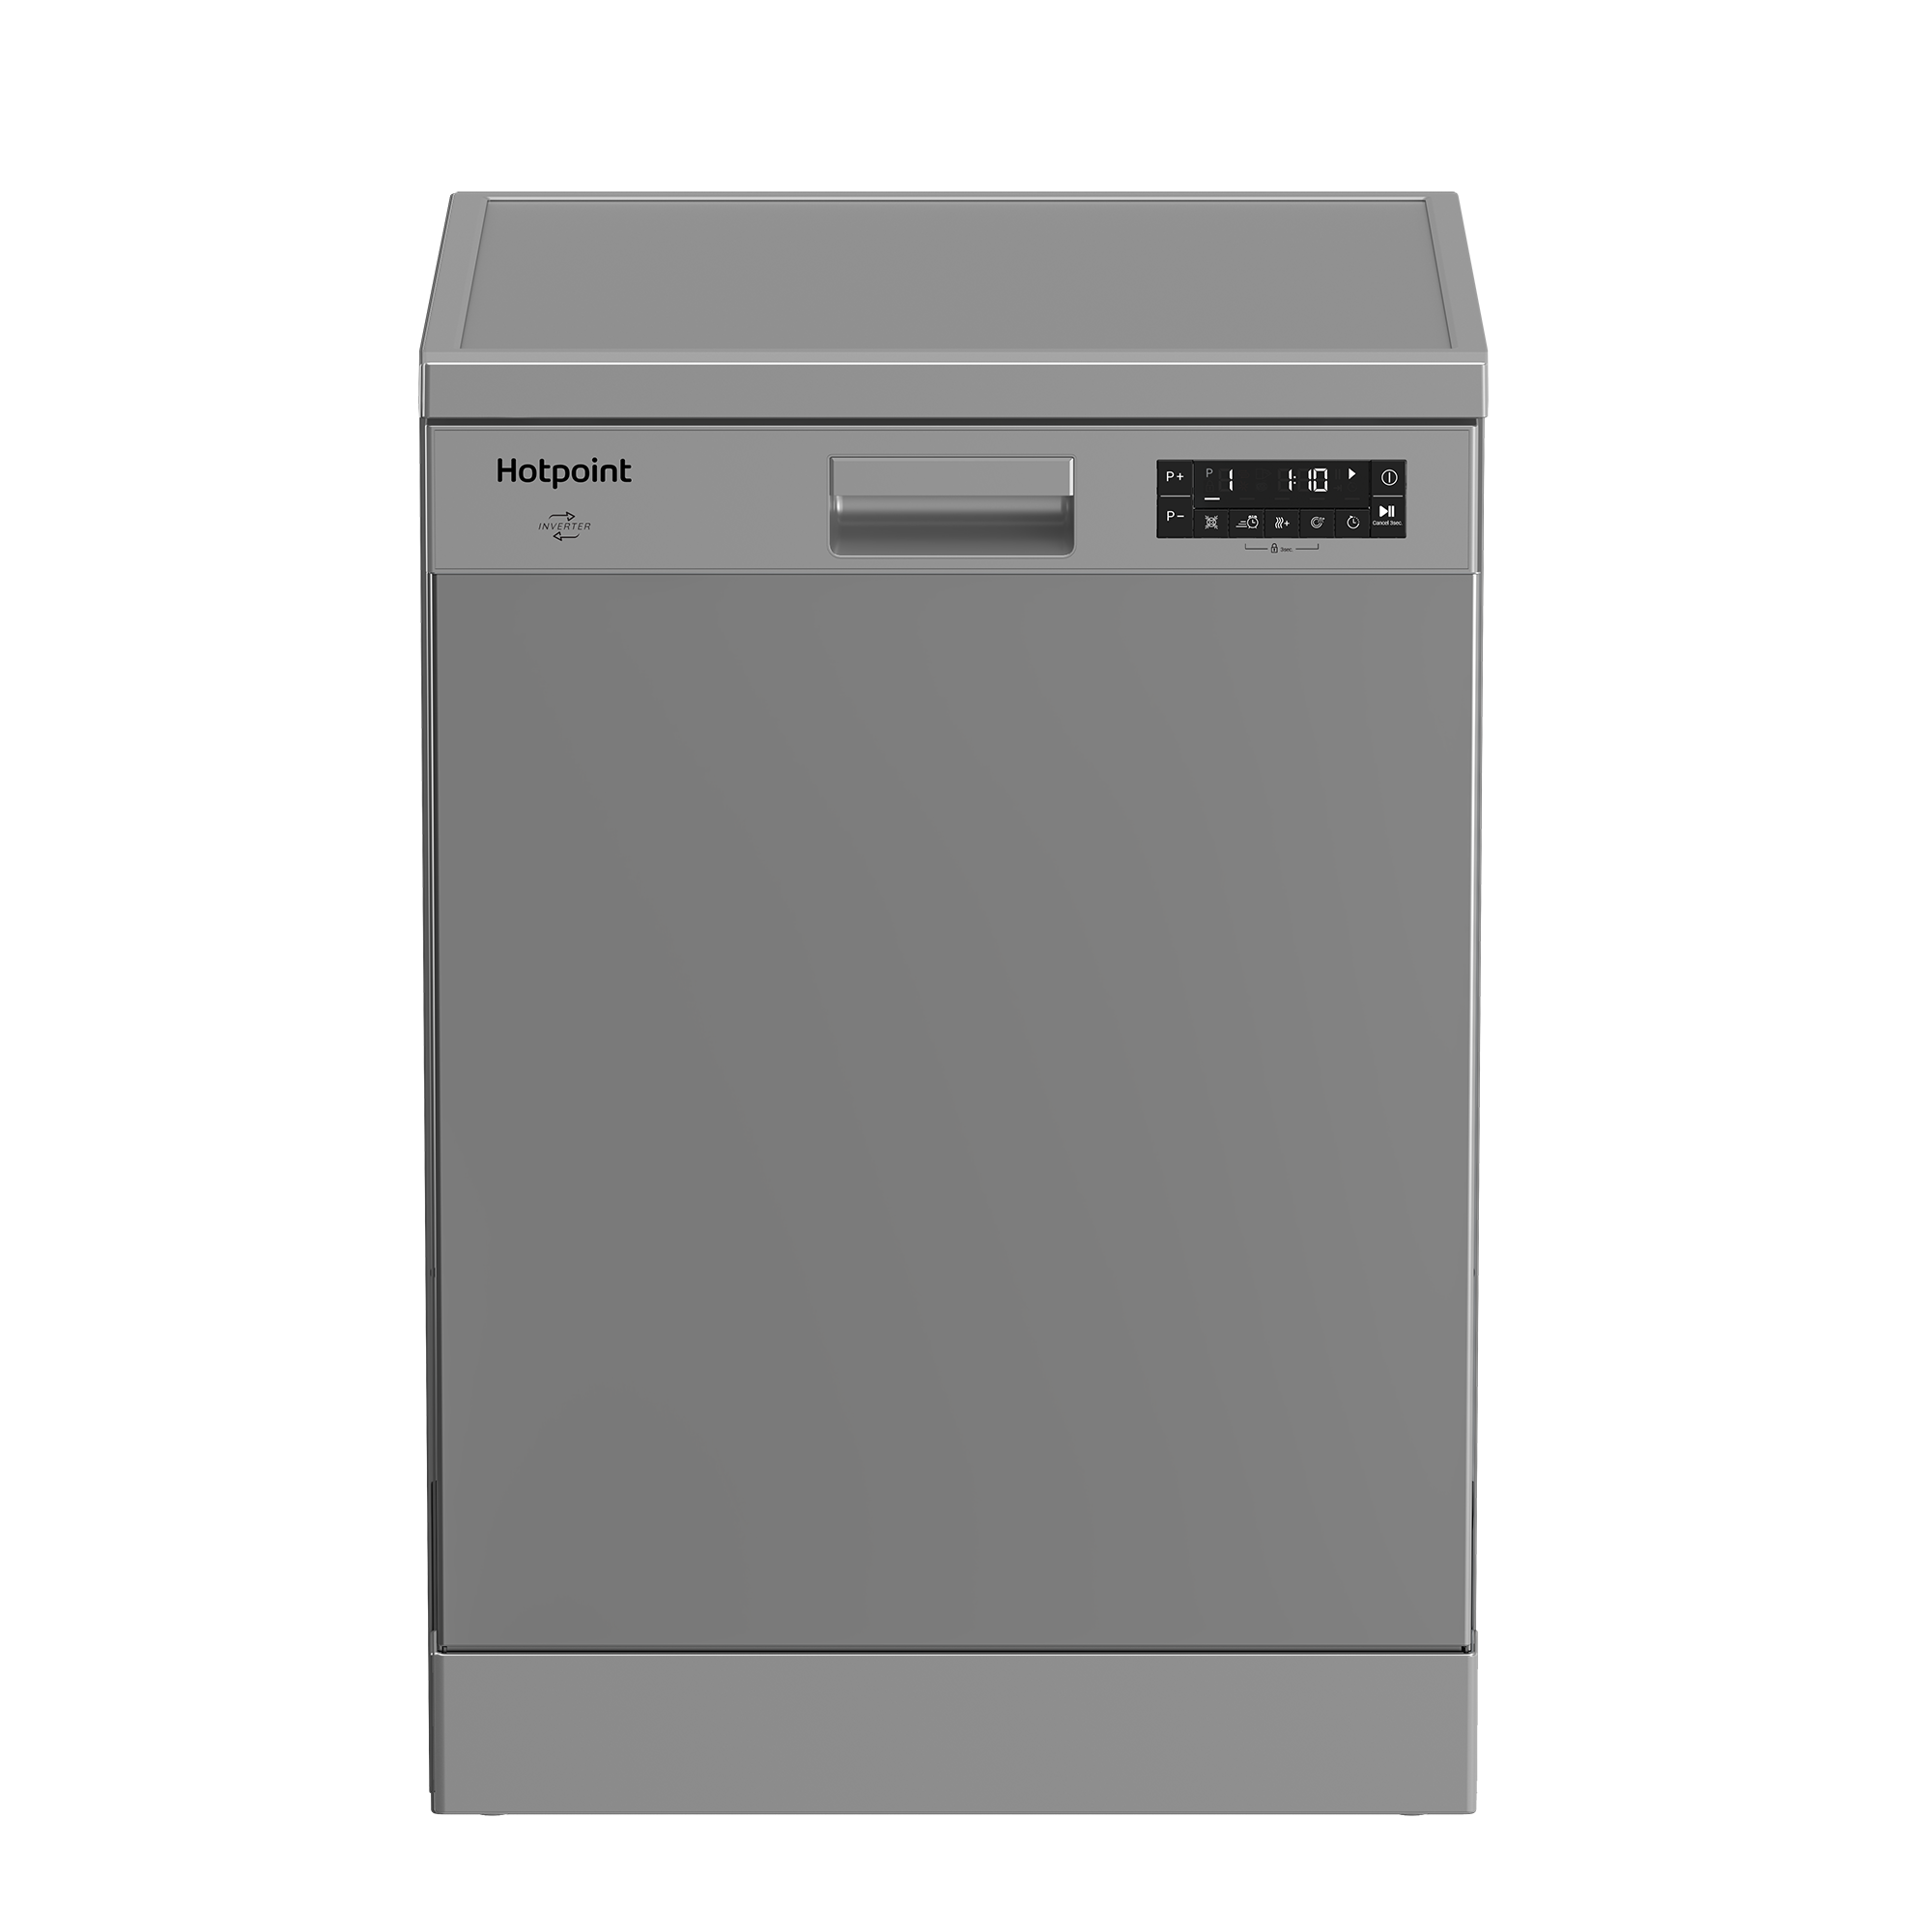 Посудомоечная машина Hotpoint HF 5C84 DW X, 60 см, серебристый